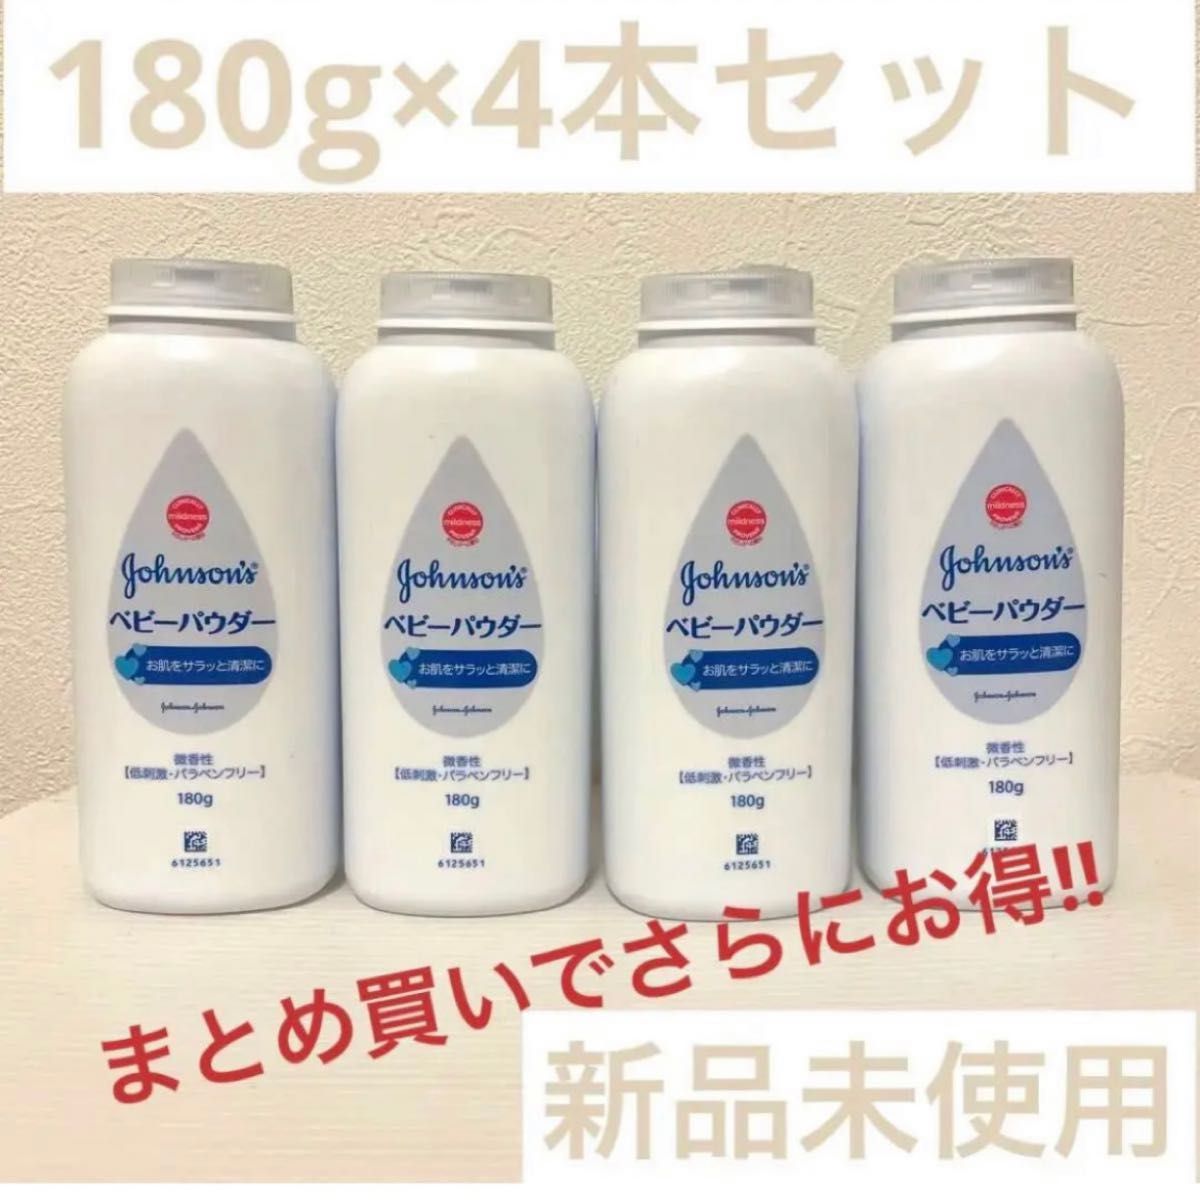 【新品】ジョンソンベビーパウダー シェイカータイプ (微香性) 180g